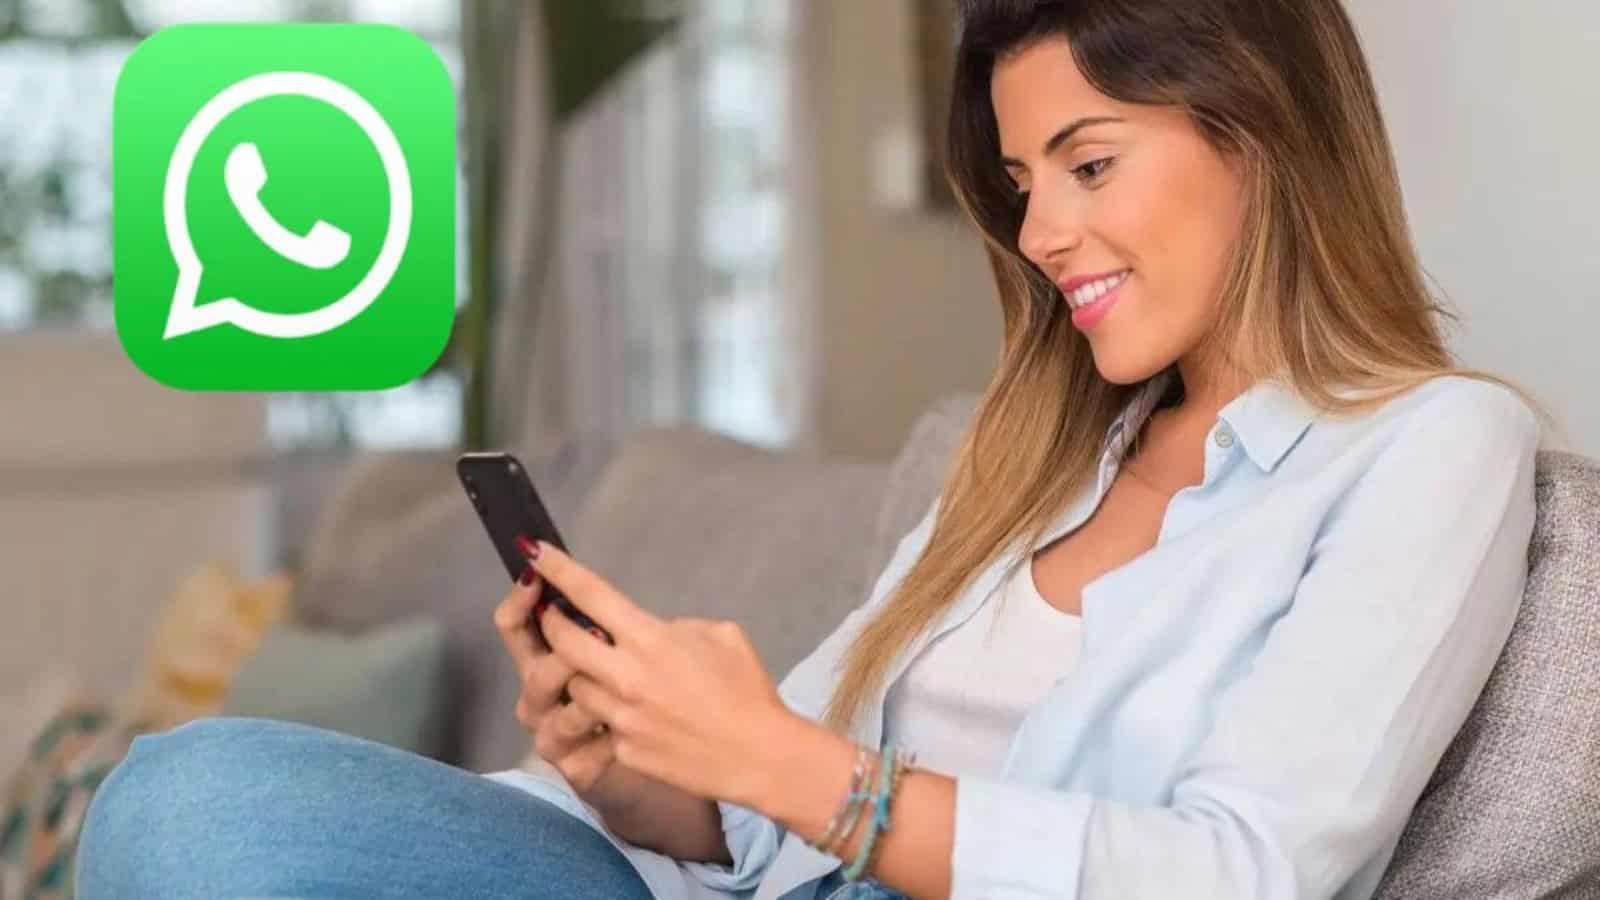 WhatsApp: la nuova funzione per spiare GRATIS il partner ogni giorno